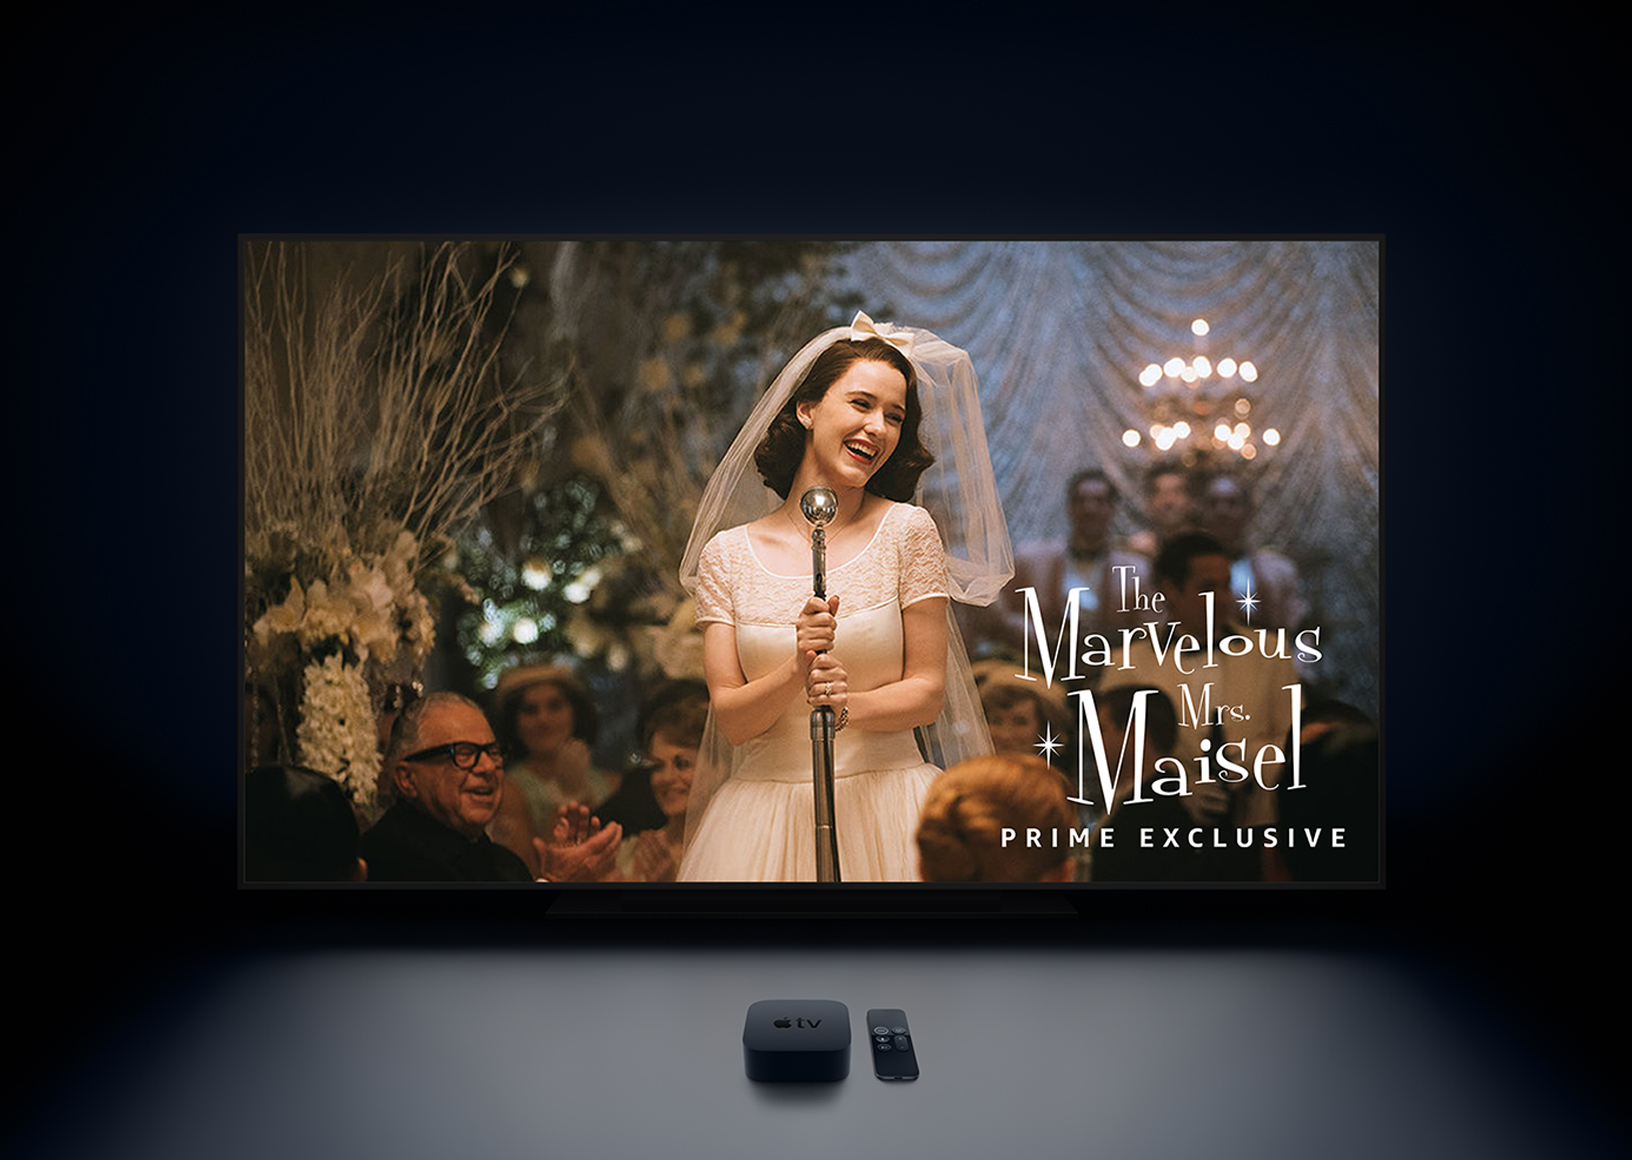 Apple_TV_4k-Marvelous-Mrs-Maisel_20171206